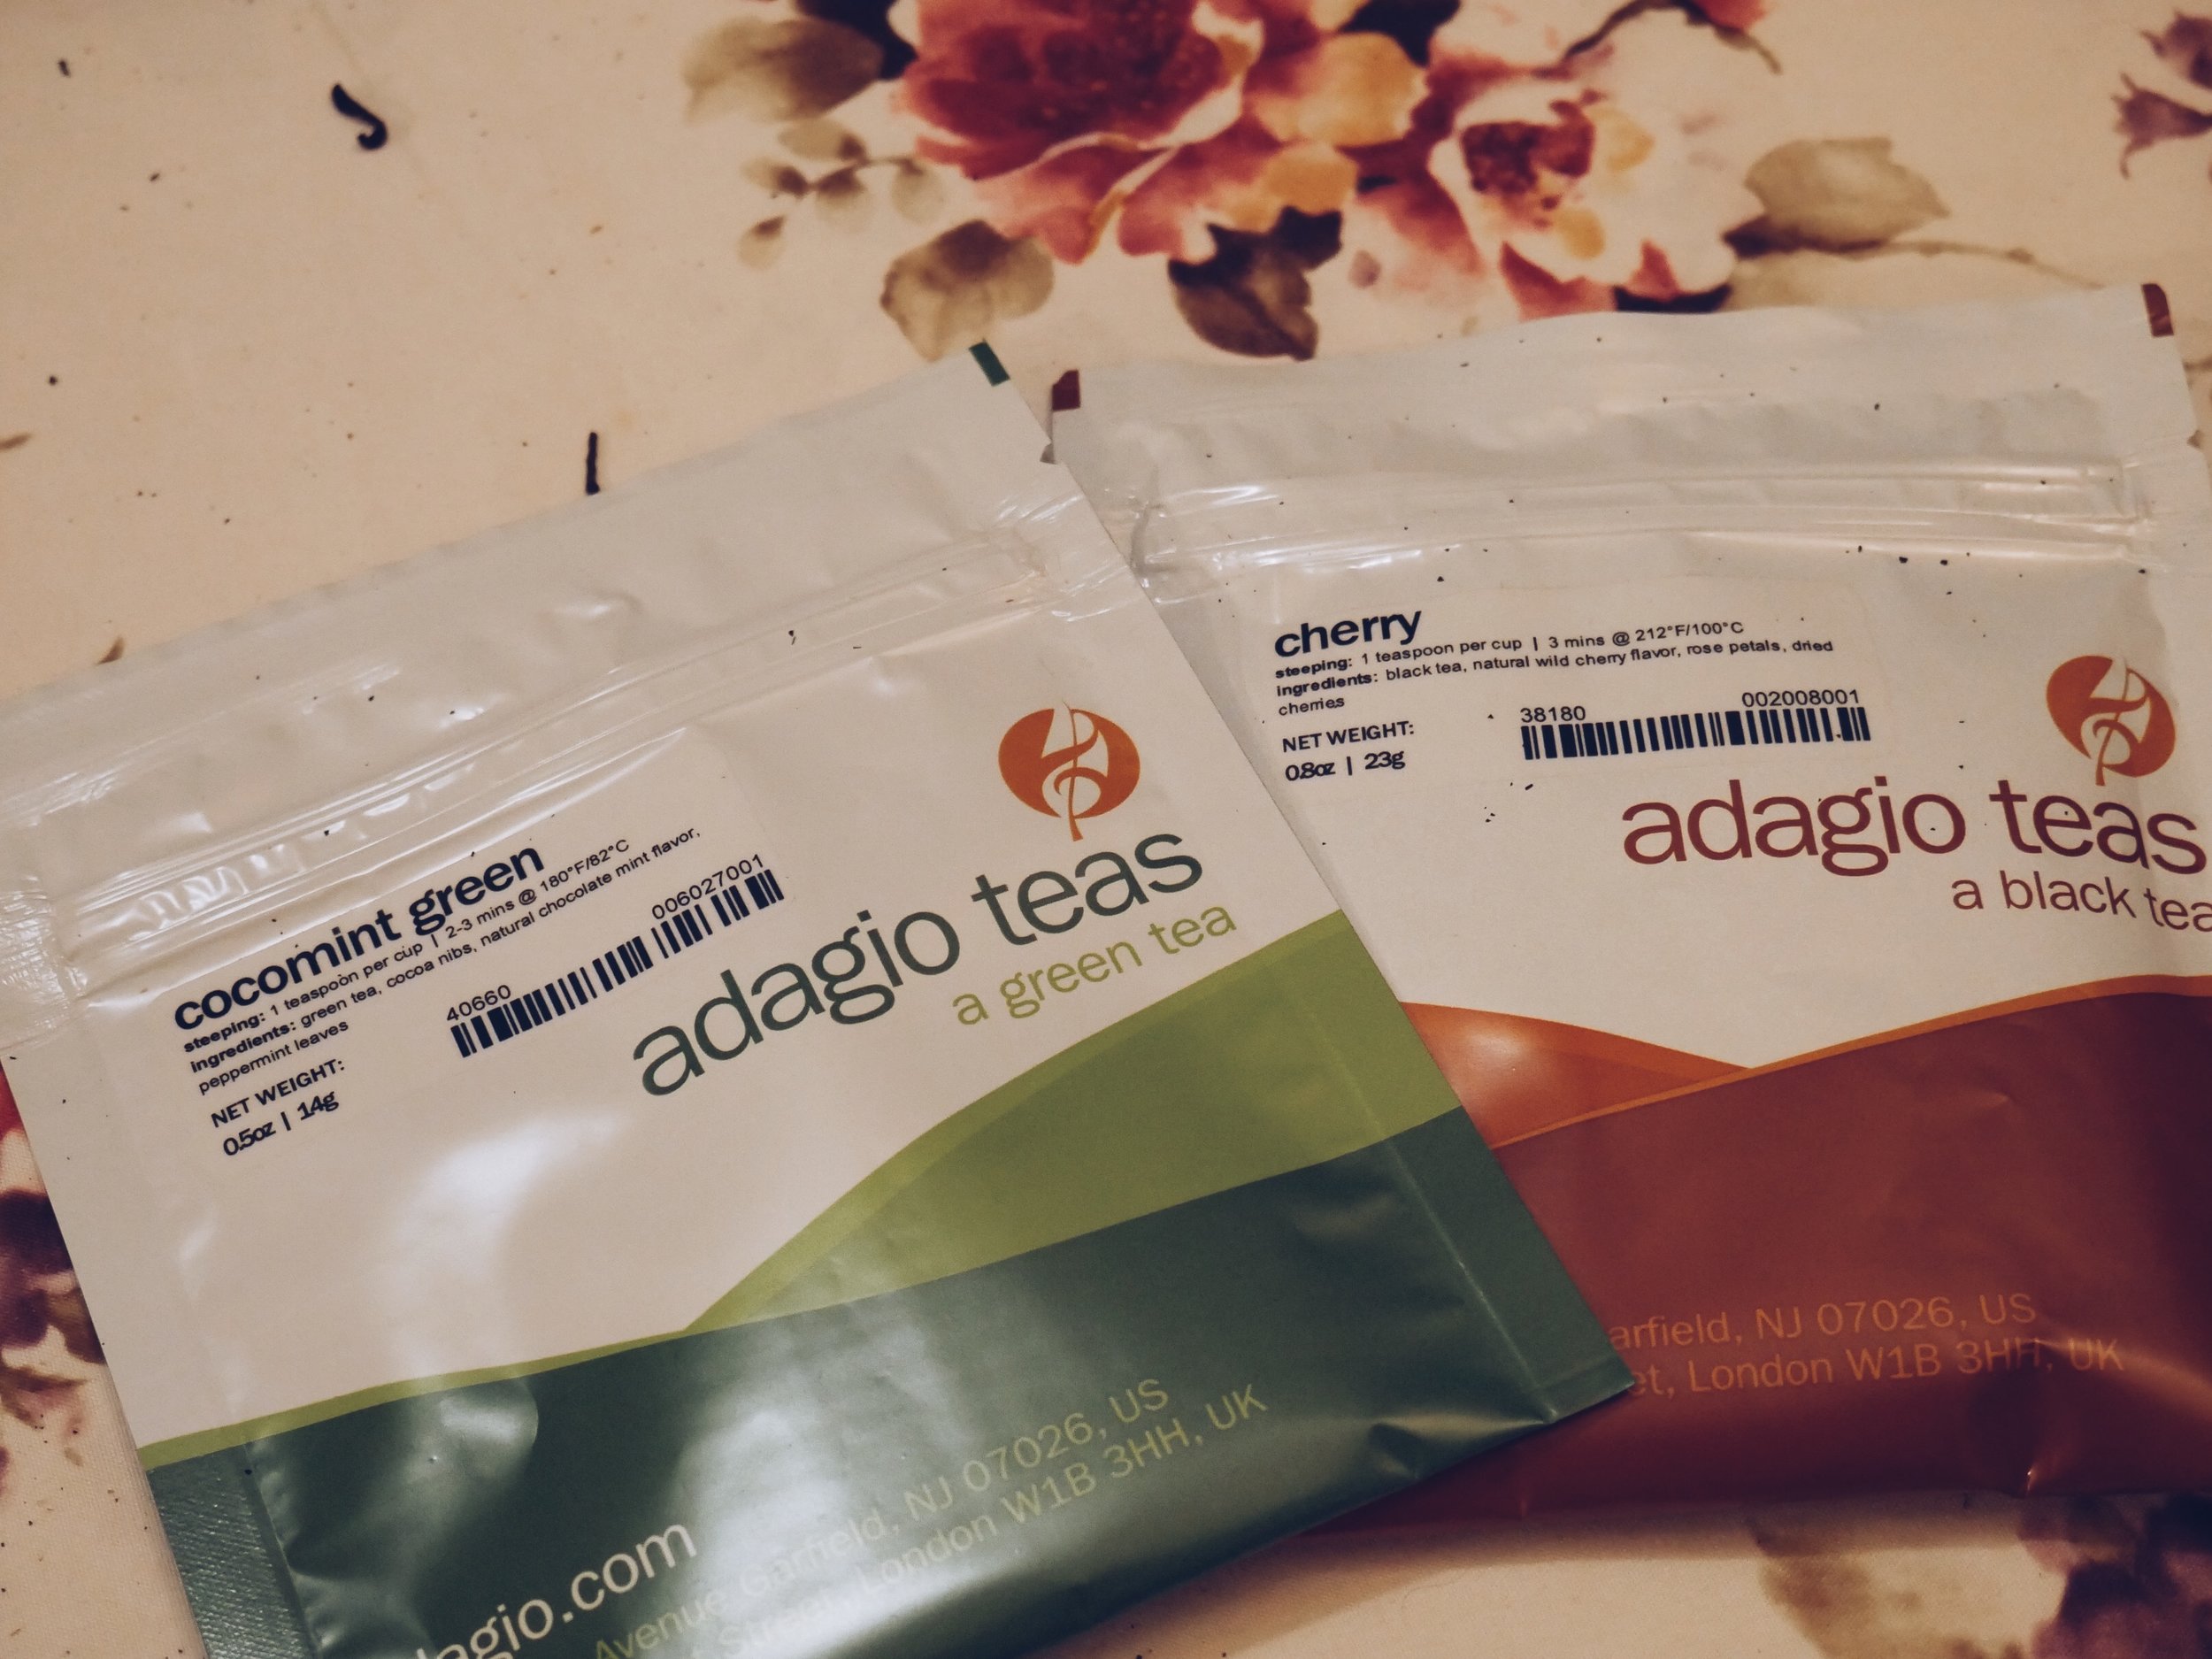 Adagio tea blends samples